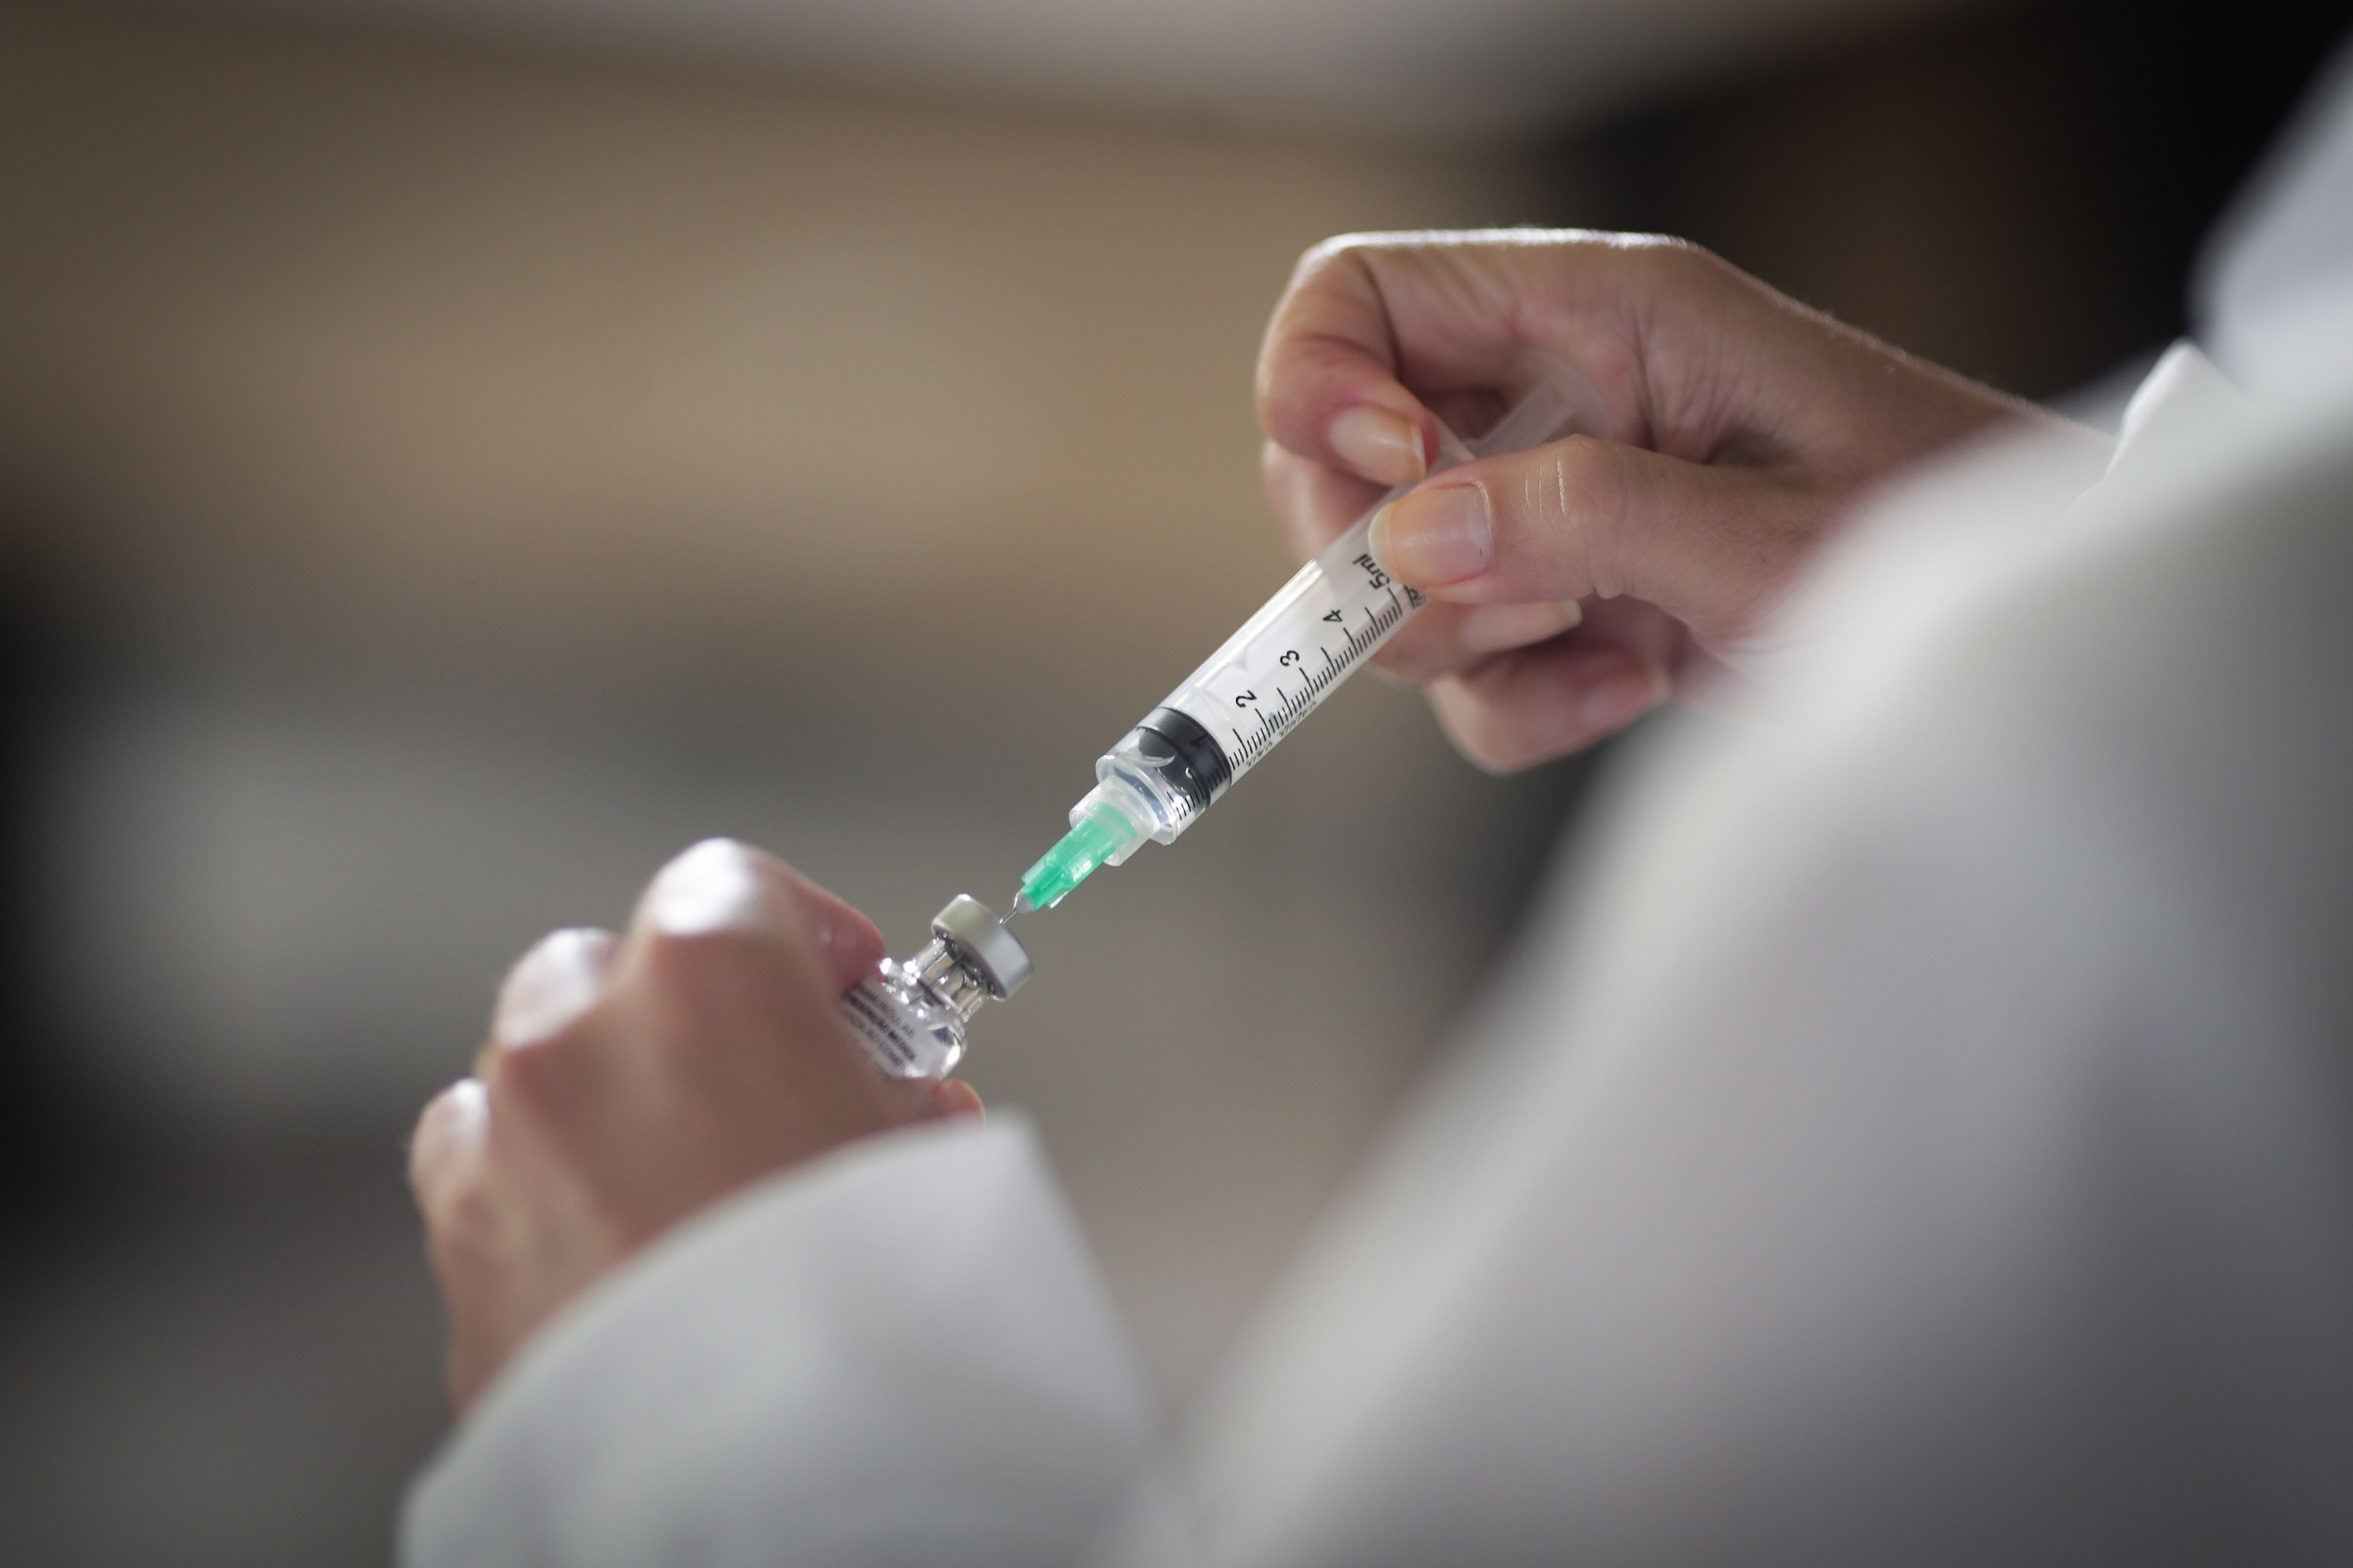 Brits onderzoek: ‘Volledig gevaccineerden kunnen evenveel virus dragen als niet-gevaccineerden’